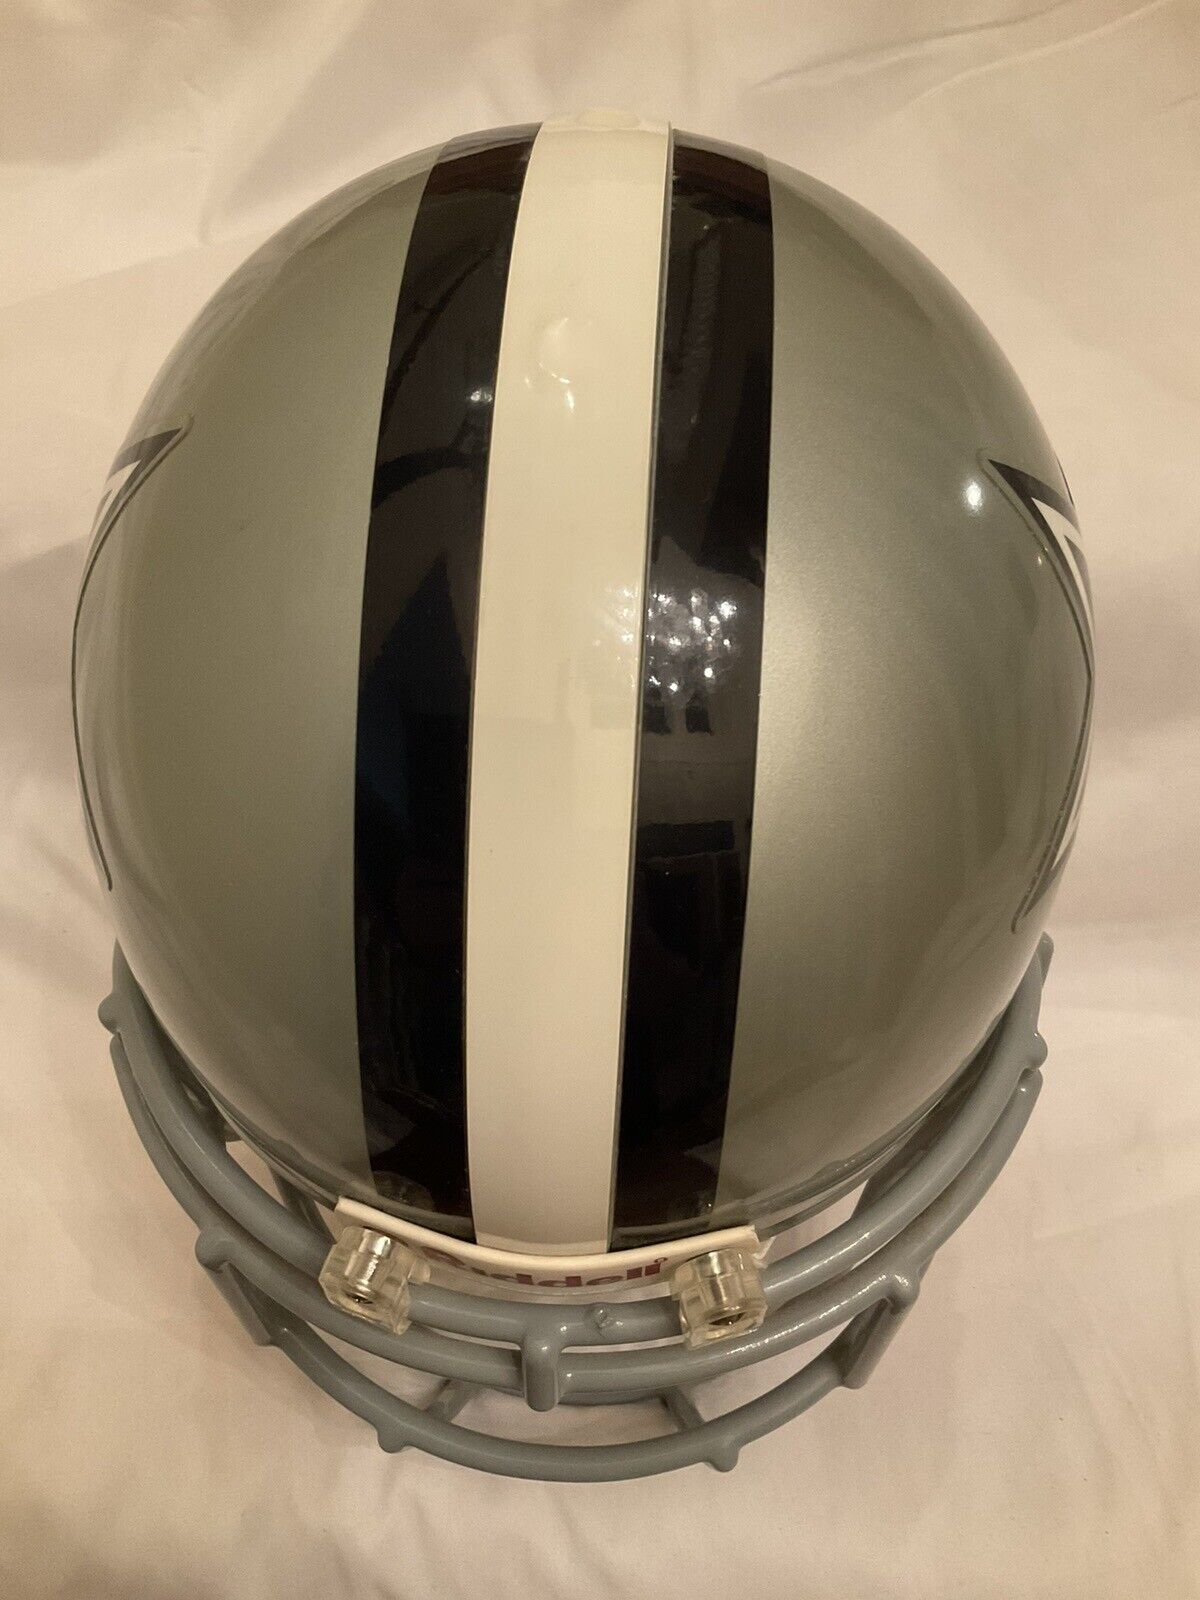 RIddell VSR-4 Football Helmet Officially Licensed Dallas Cowboys Emmitt Smith Sports Mem, Cards & Fan Shop:Fan Apparel & Souvenirs:Football-NFL Riddell   